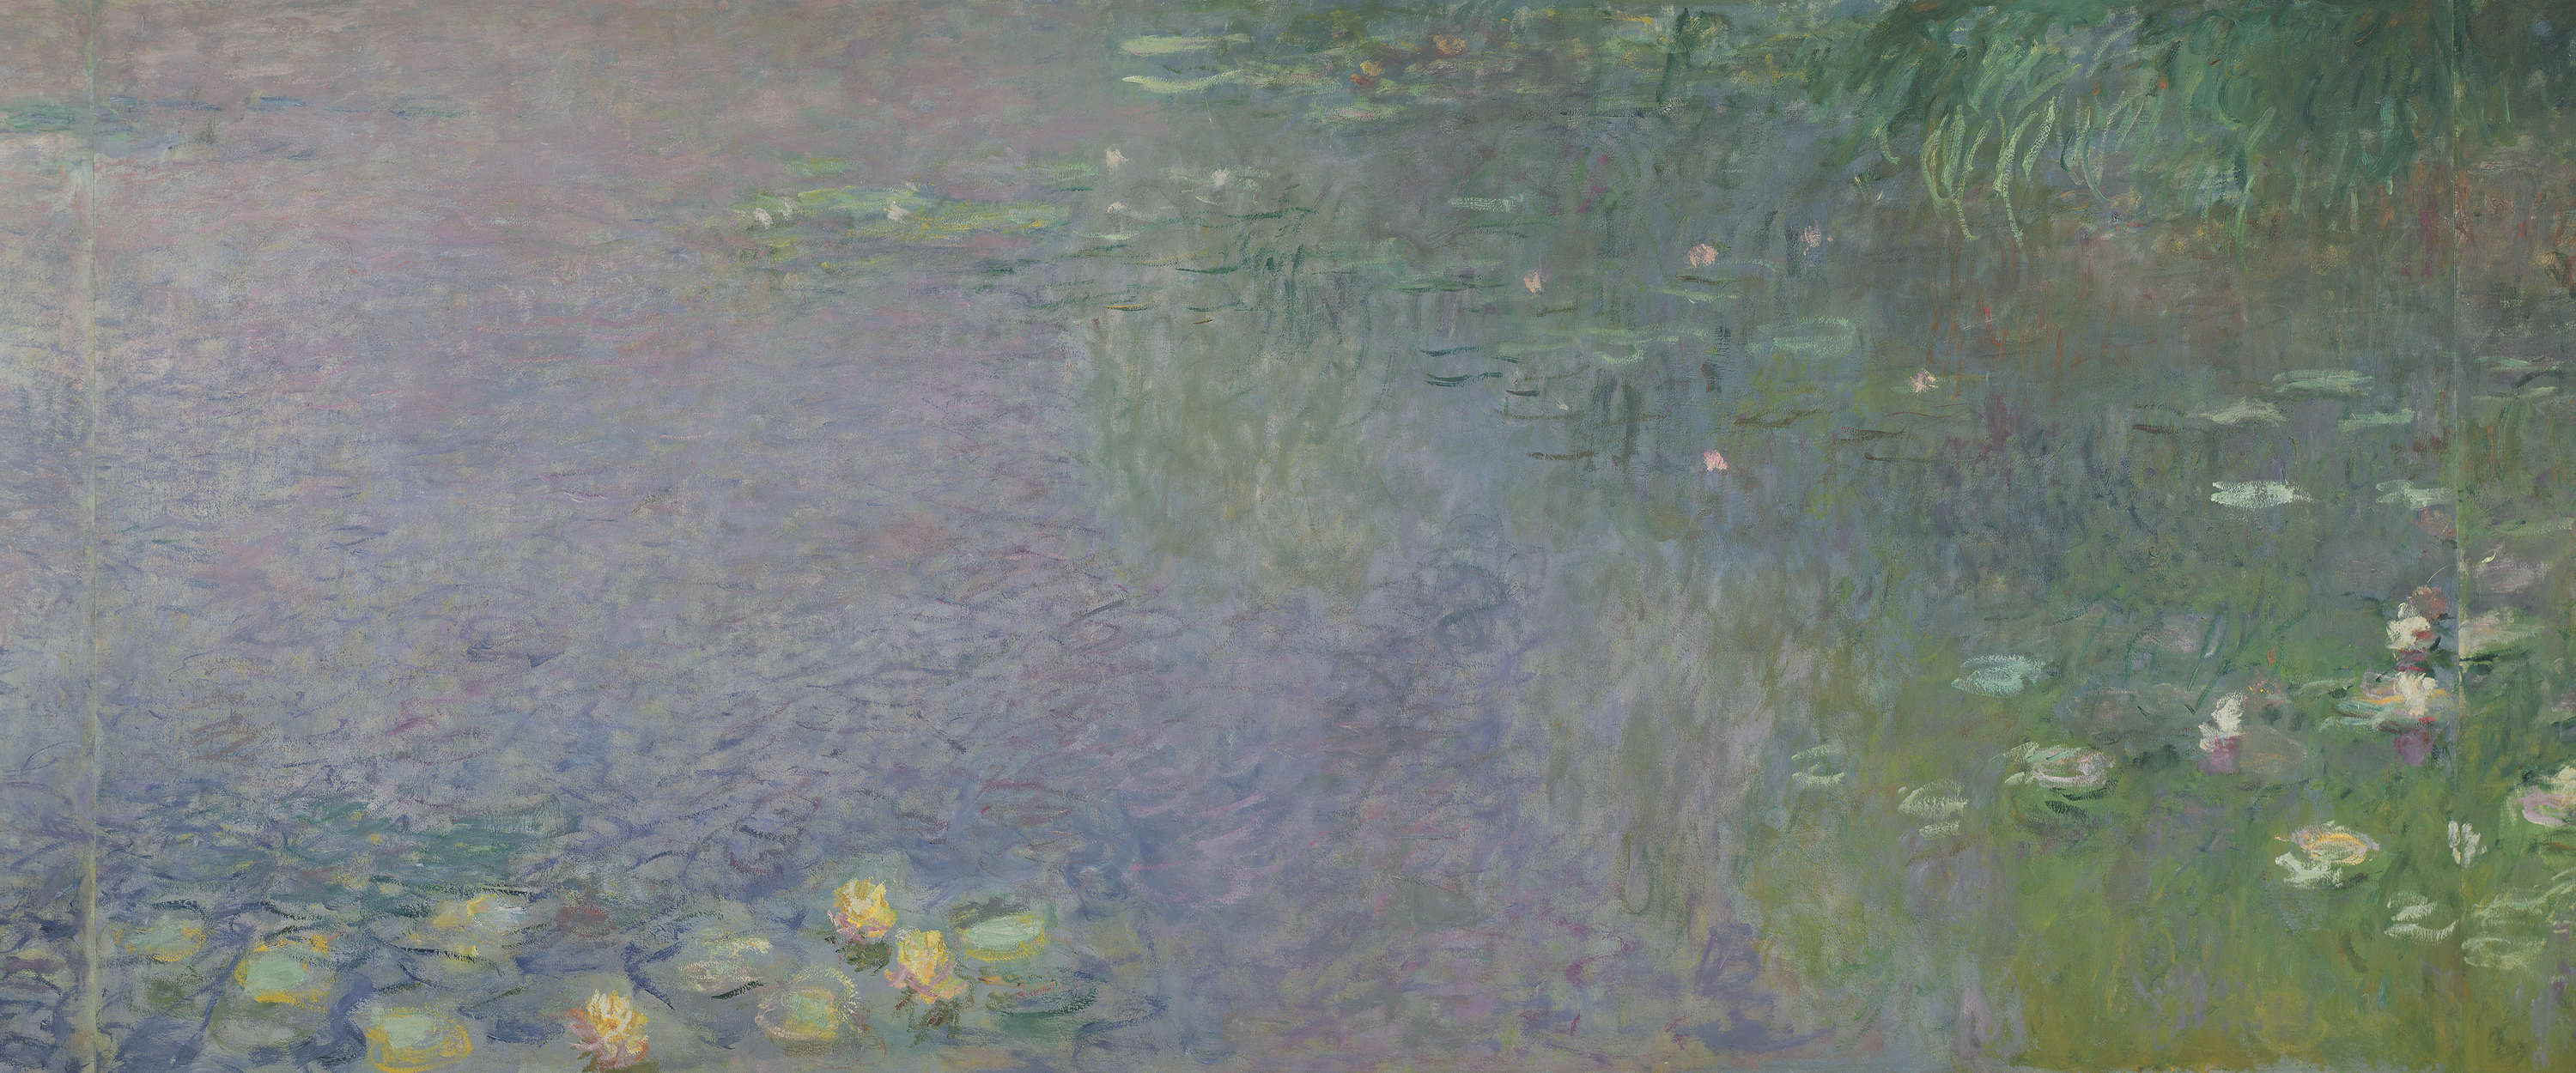             Mural "Nenúfares: Mañana" de Claude Monet
        